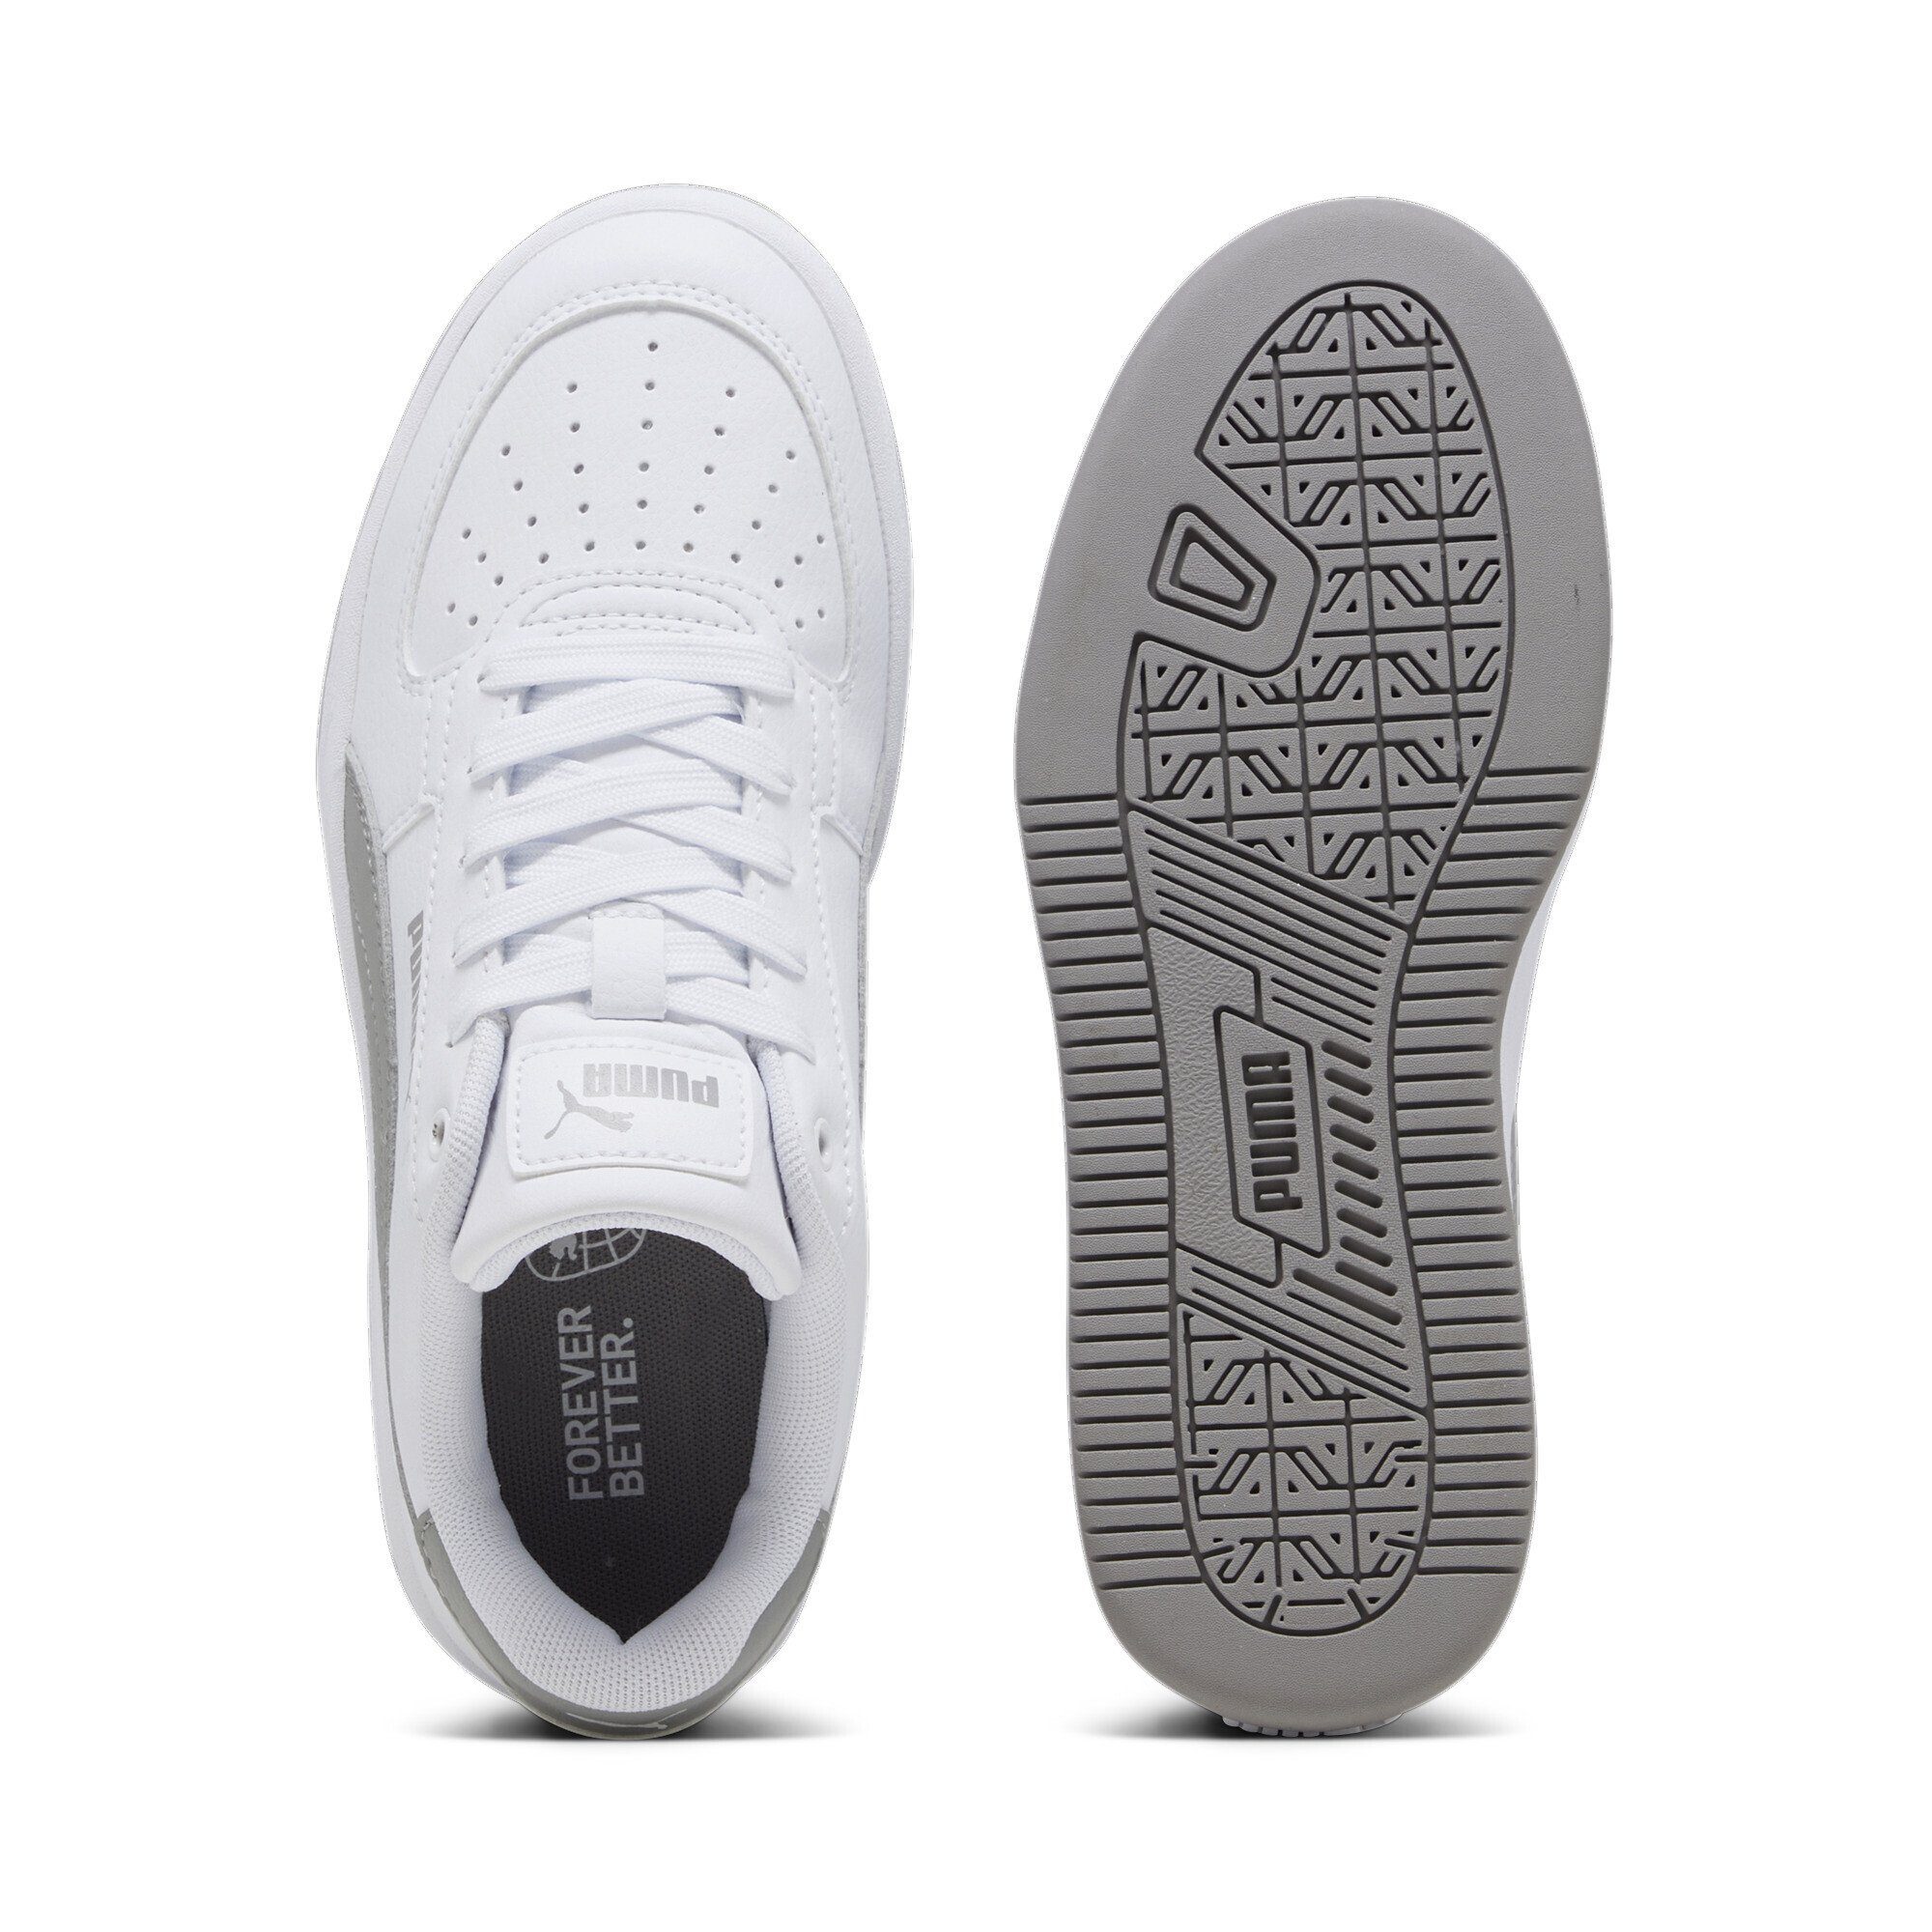 2.0 Jugendliche Caven Sneakers PUMA Sneaker Gray Concrete PUMA White